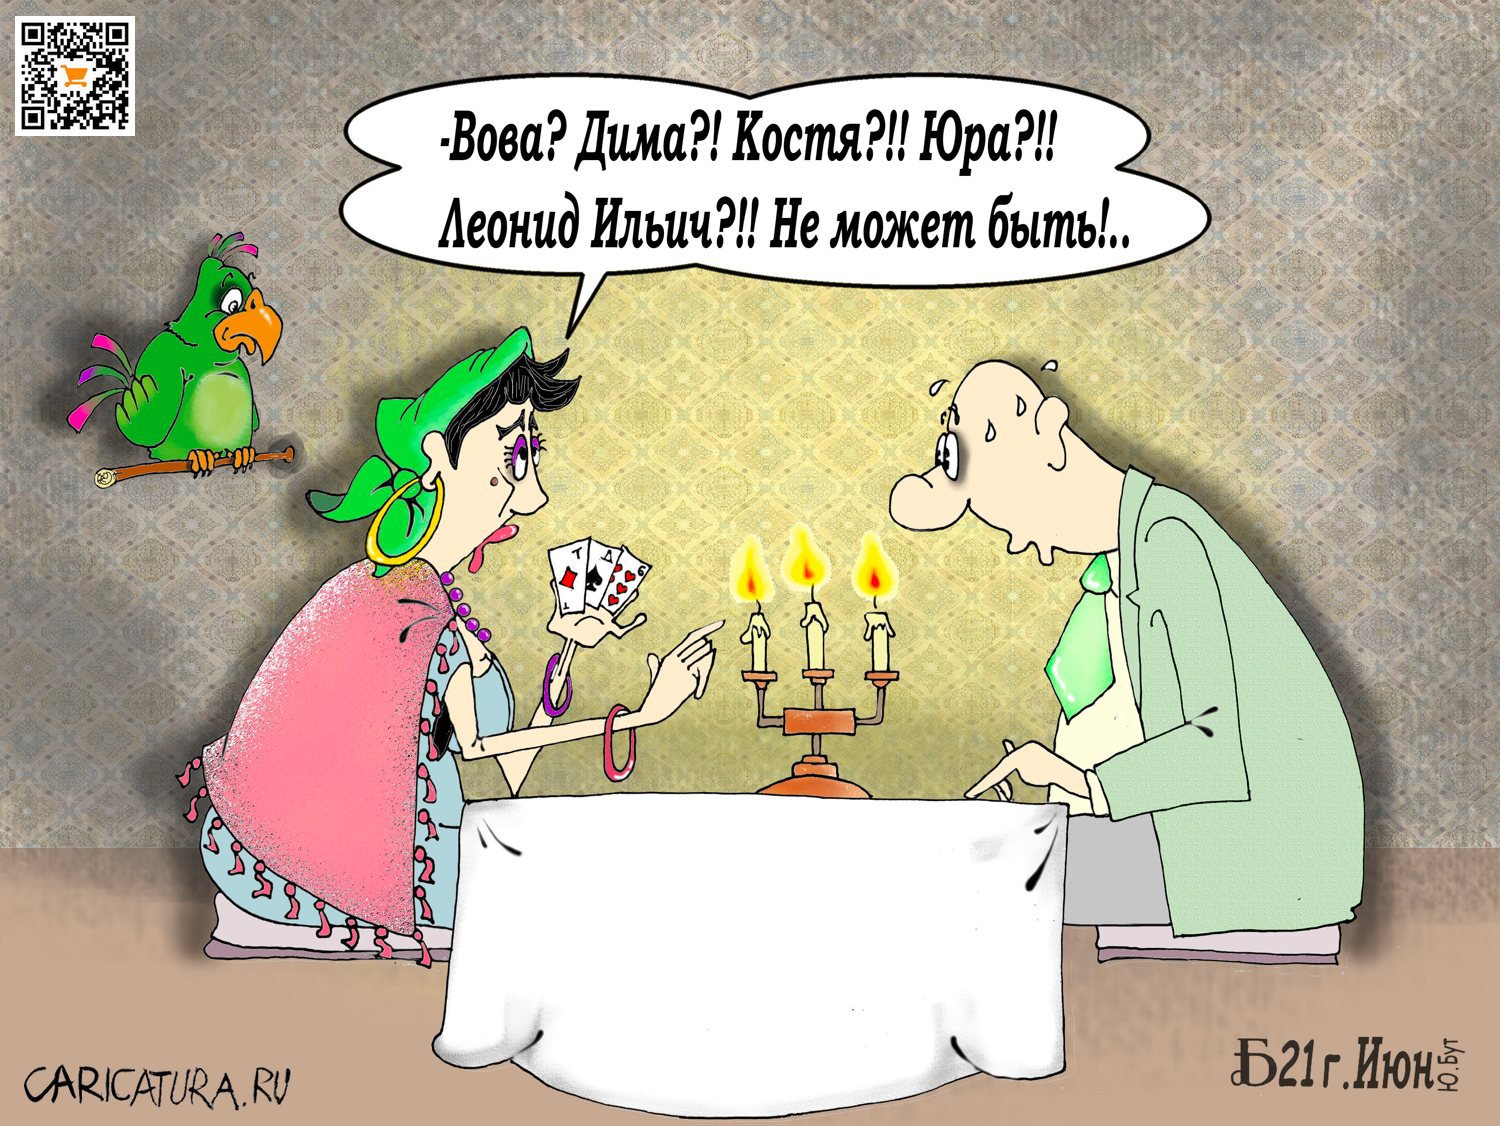 Карикатура "Проявное", Борис Демин